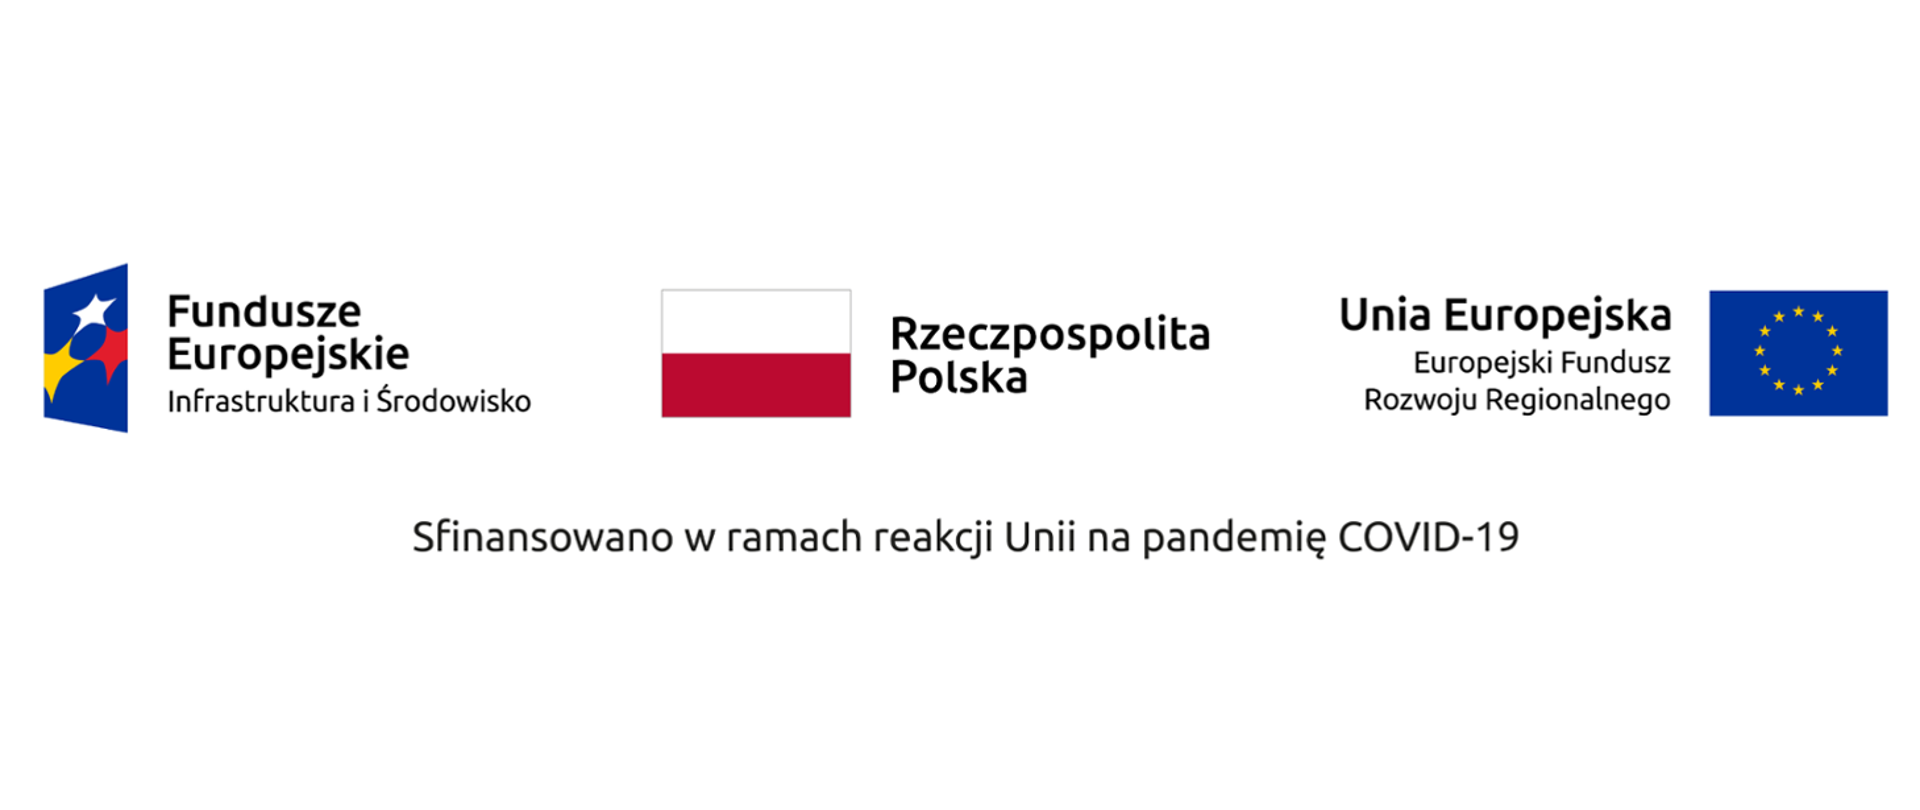 Na obrazie widoczne są logo Funduszy Europejskich Infrastruktury i Środowiska, biało czerwona flaga Rzeczpospolitej Polskiej, oraz niebieska flaga ze złotymi gwiazdamii Unii Europejskiej Europejskiego Fundusz Rozwoju Regionalnego. Poniżej znajduje się napis "Sfinansowano w ramach reakcji Unii na pandemię COVID-19".